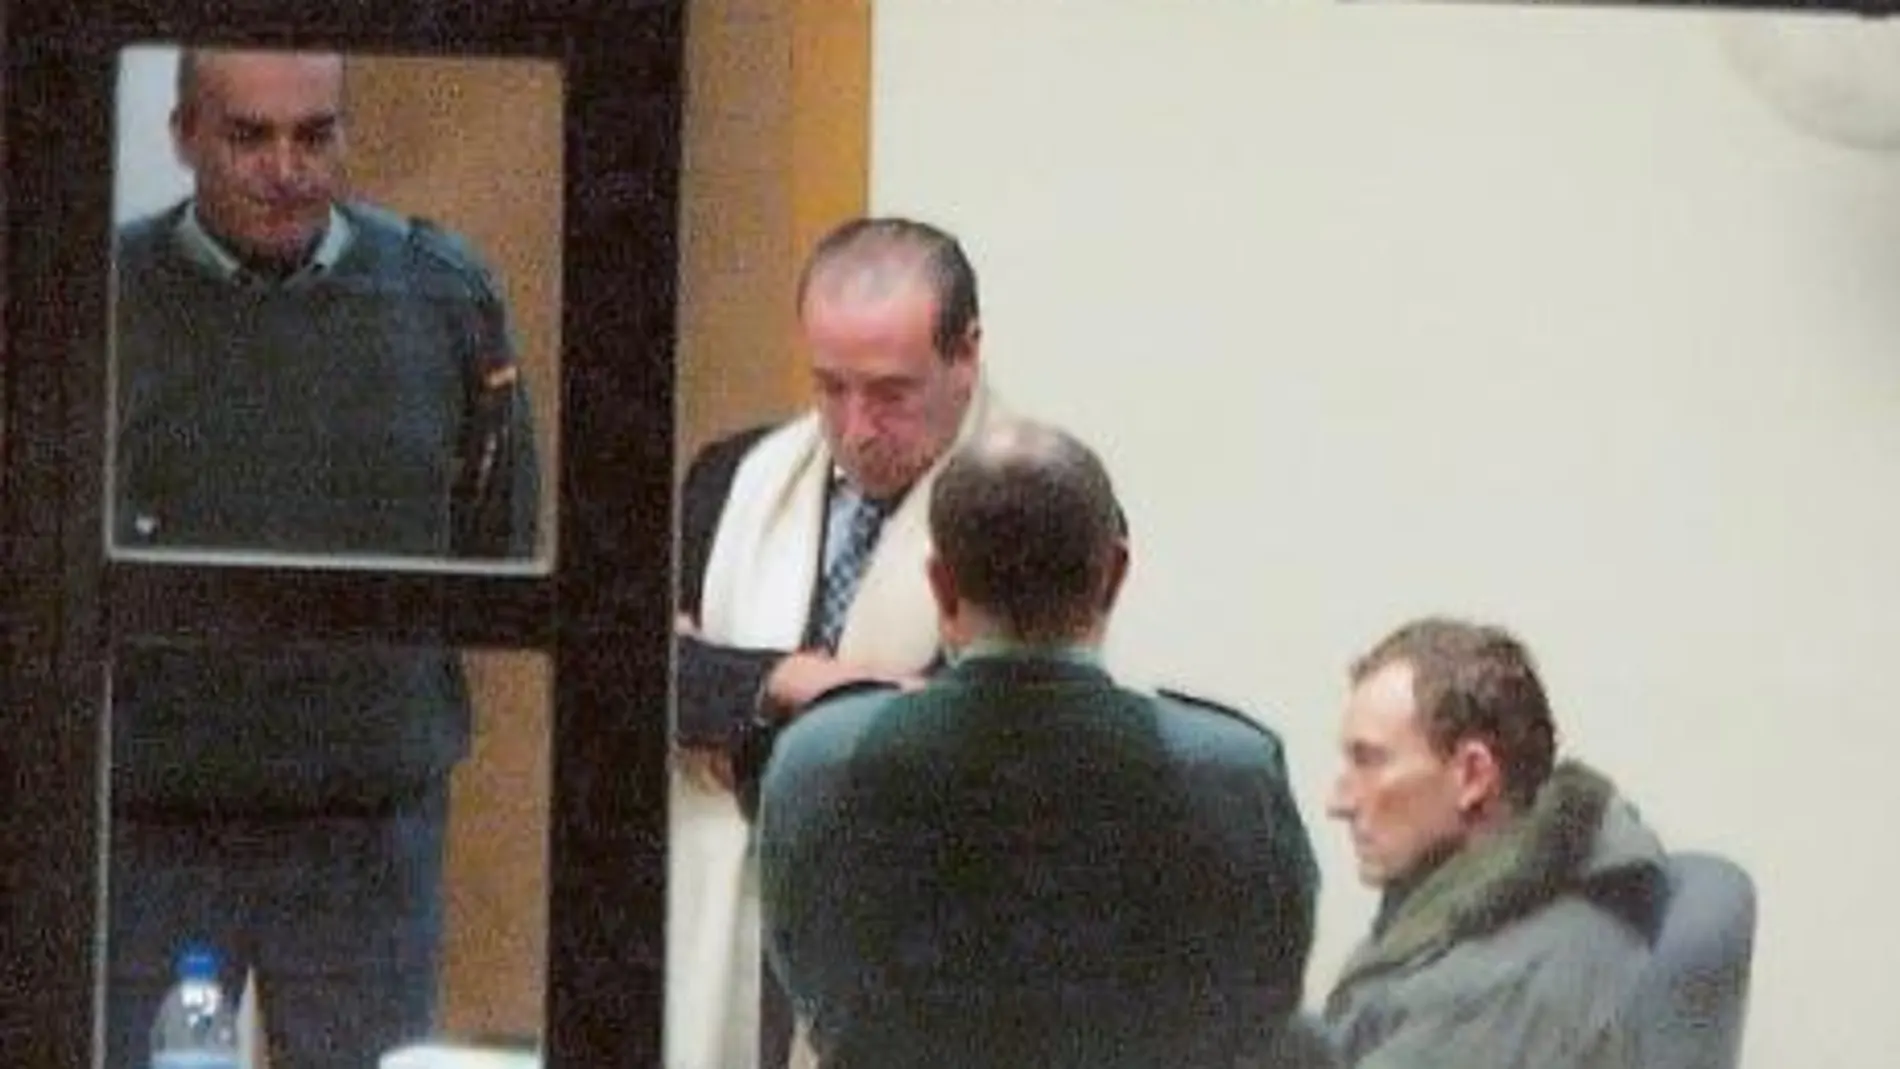 Santiago Mainar, sospechoso del crimen de Fago, presta declaración en los Juzgados de Jaca en 2007